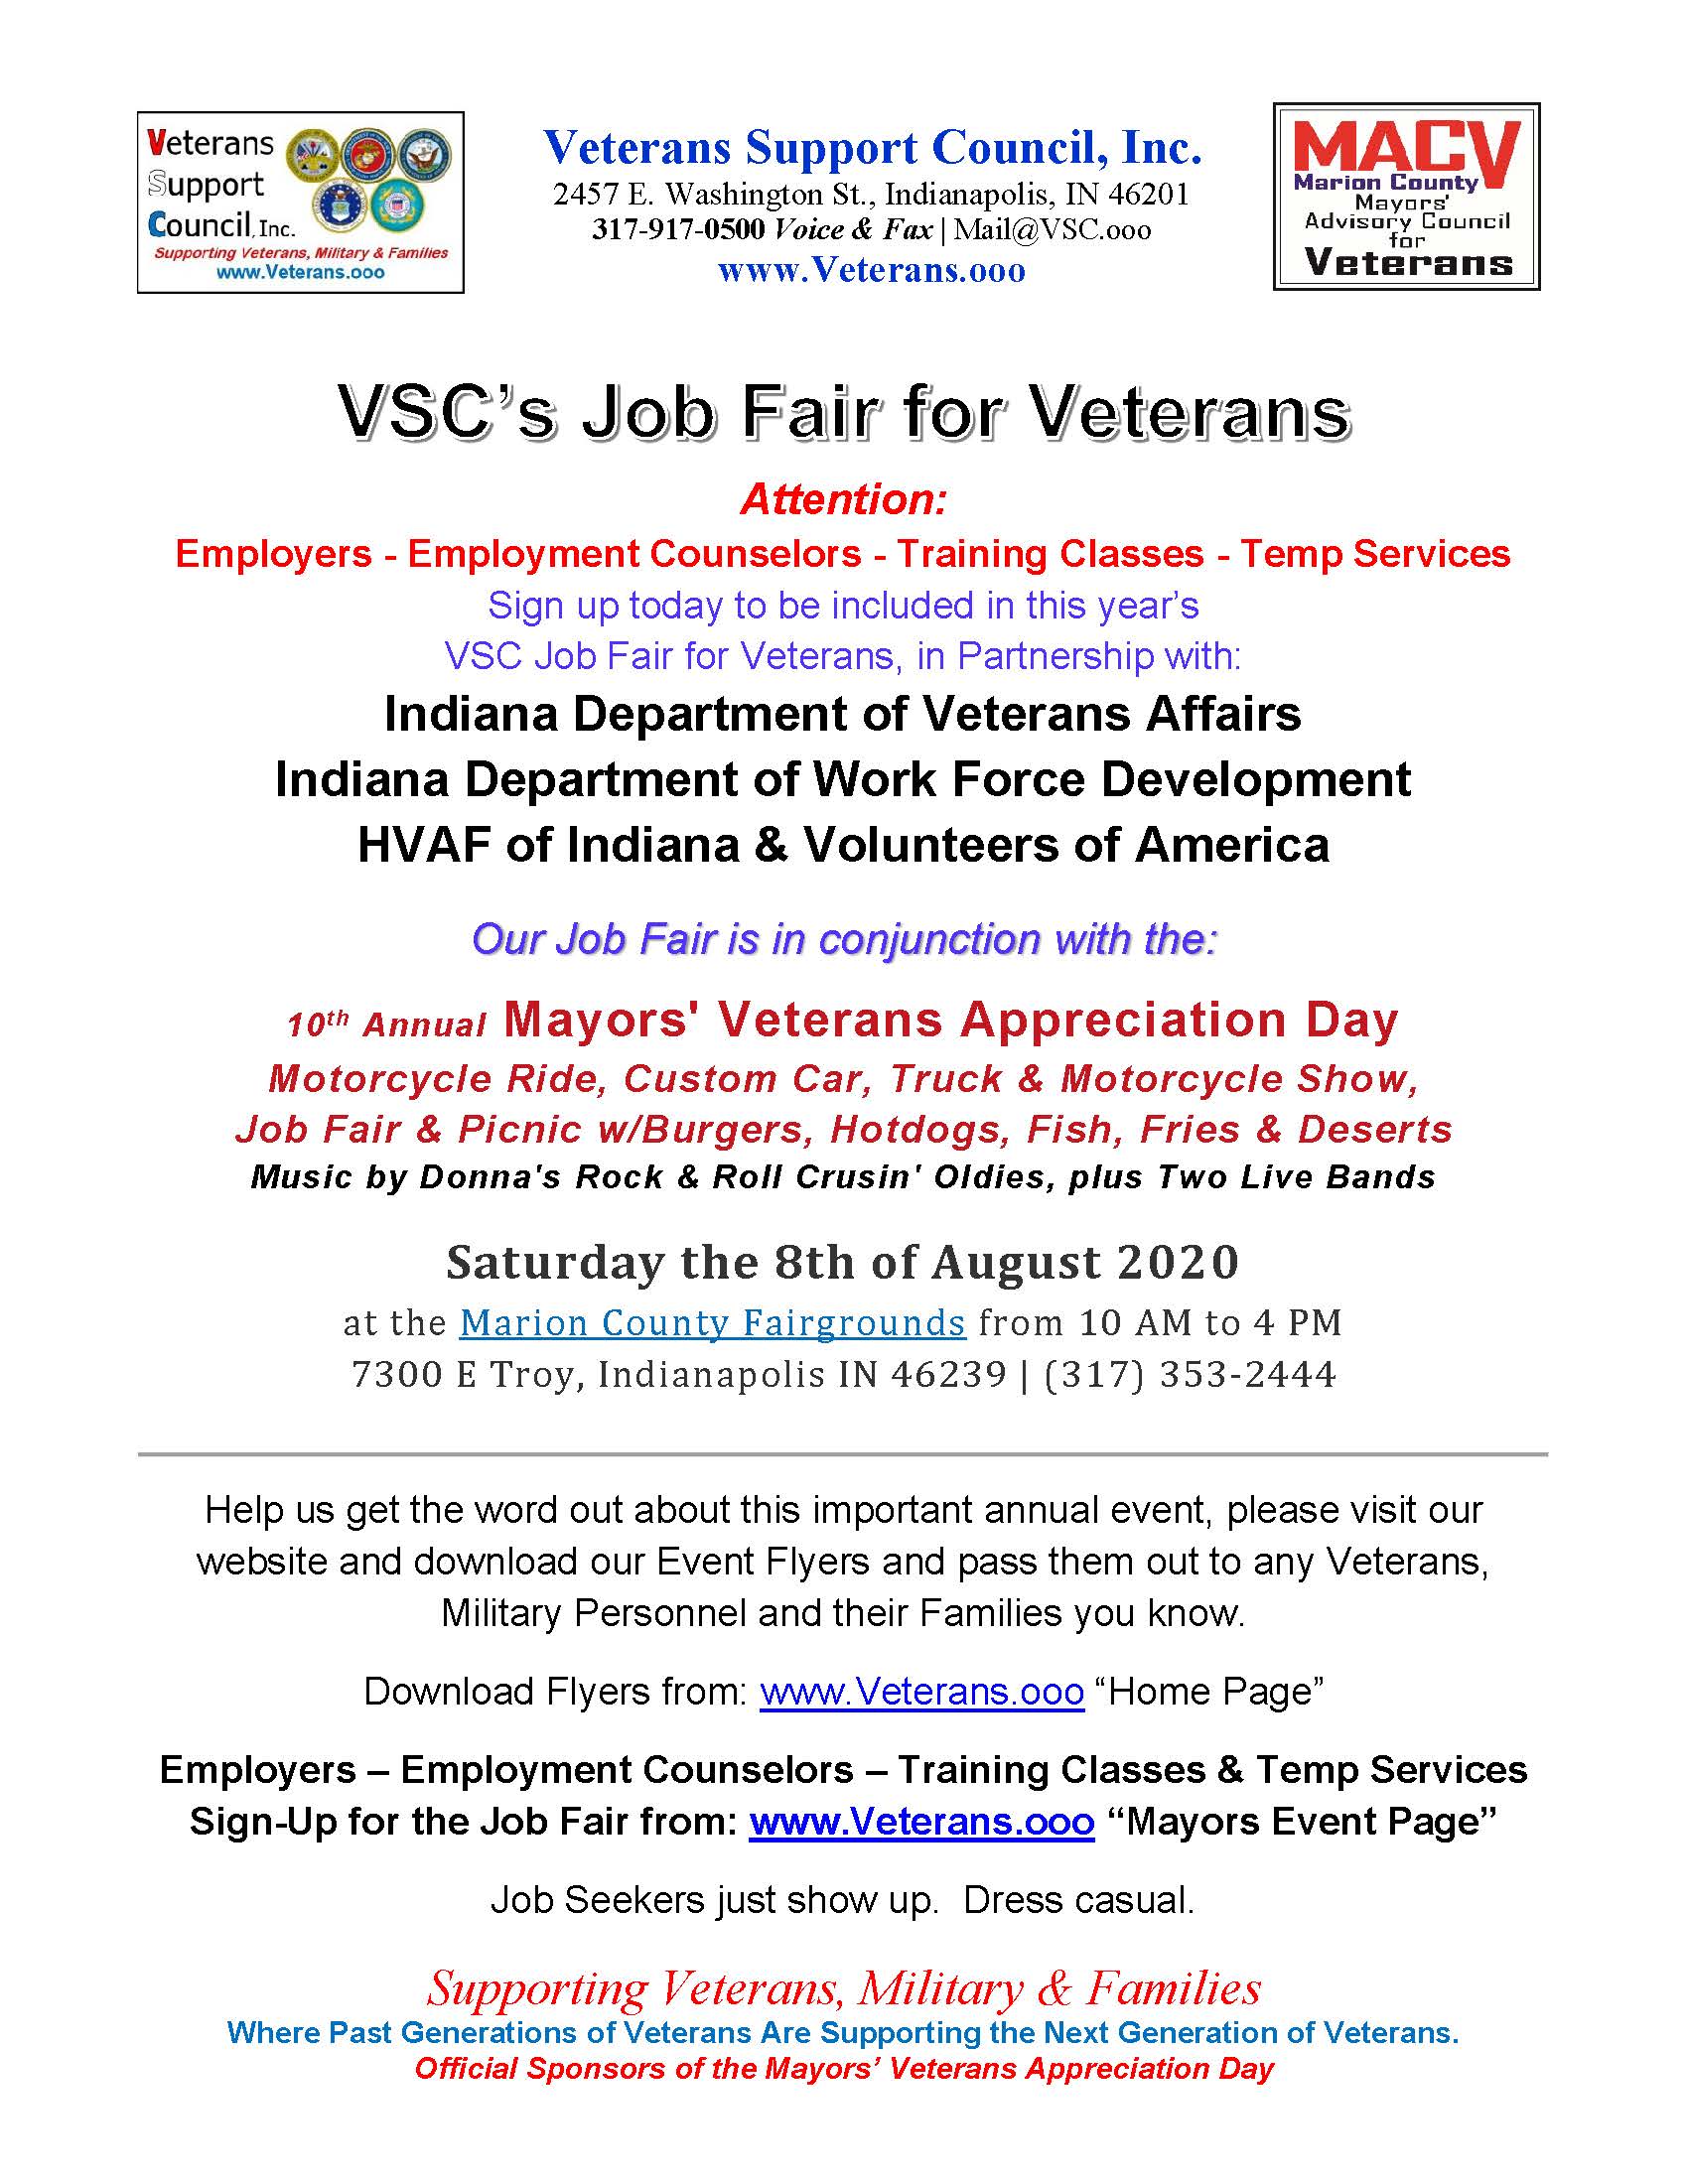 VSC's Job Fair Flyer for Veterans